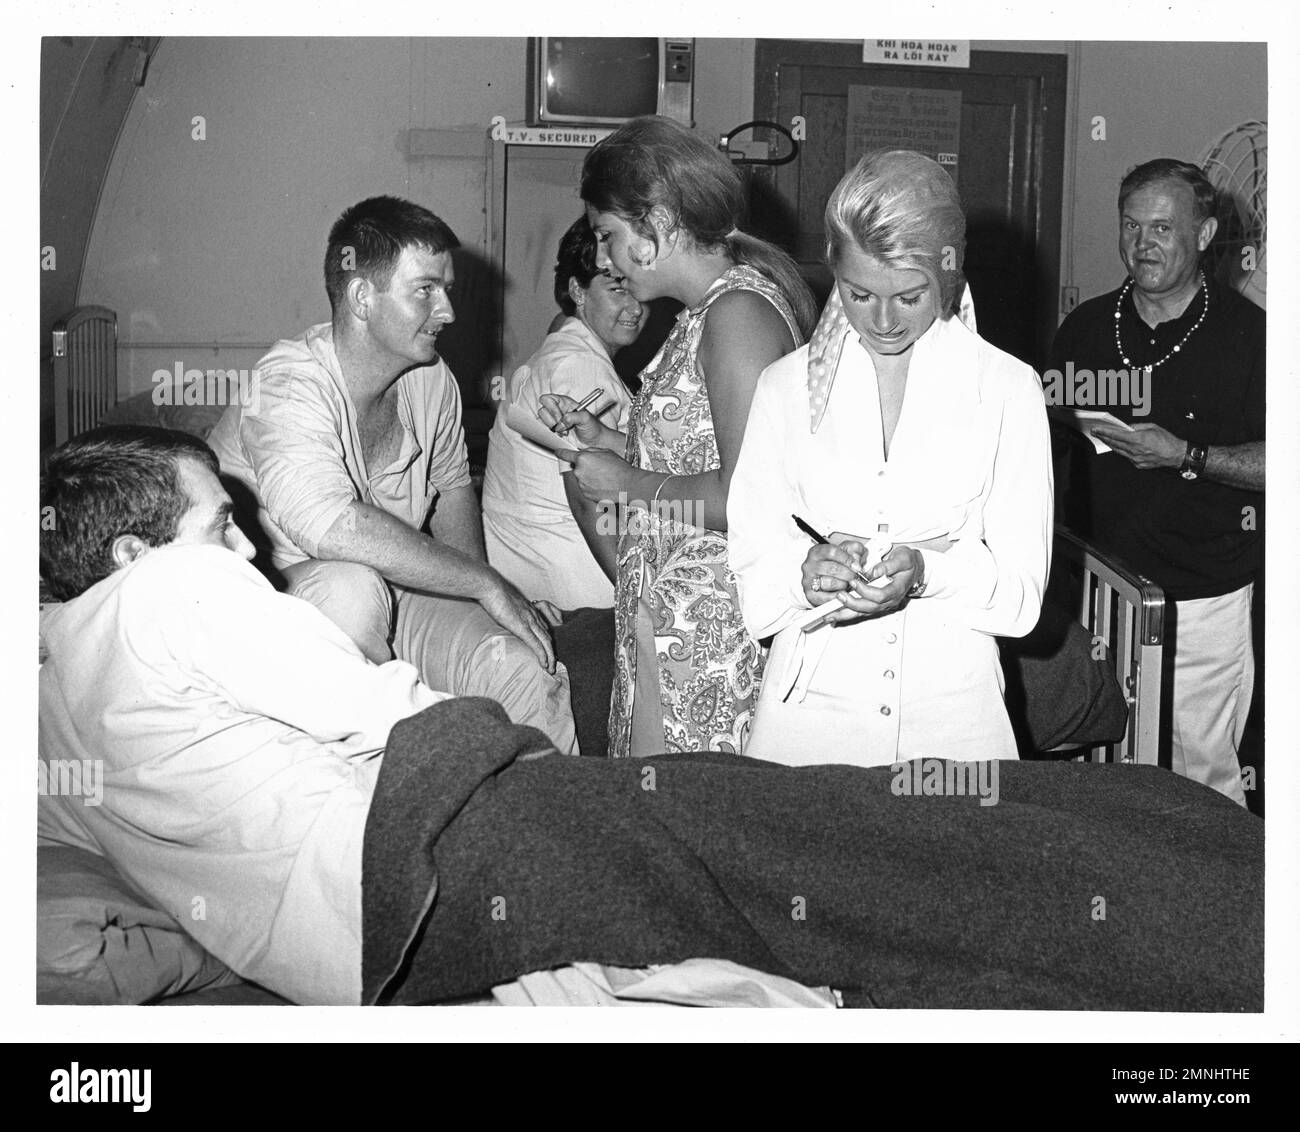 [Naval Support Activity Hospital Danang, Vietnam]. VON USO gesponserte Handshake-Tour. (Donna DeVorona, Marsha Bennett und Johnny Grant signieren Autogramme für verwundete Marines). [Vietnamkrieg]. Ca. 29. Juni 1969 Stockfoto